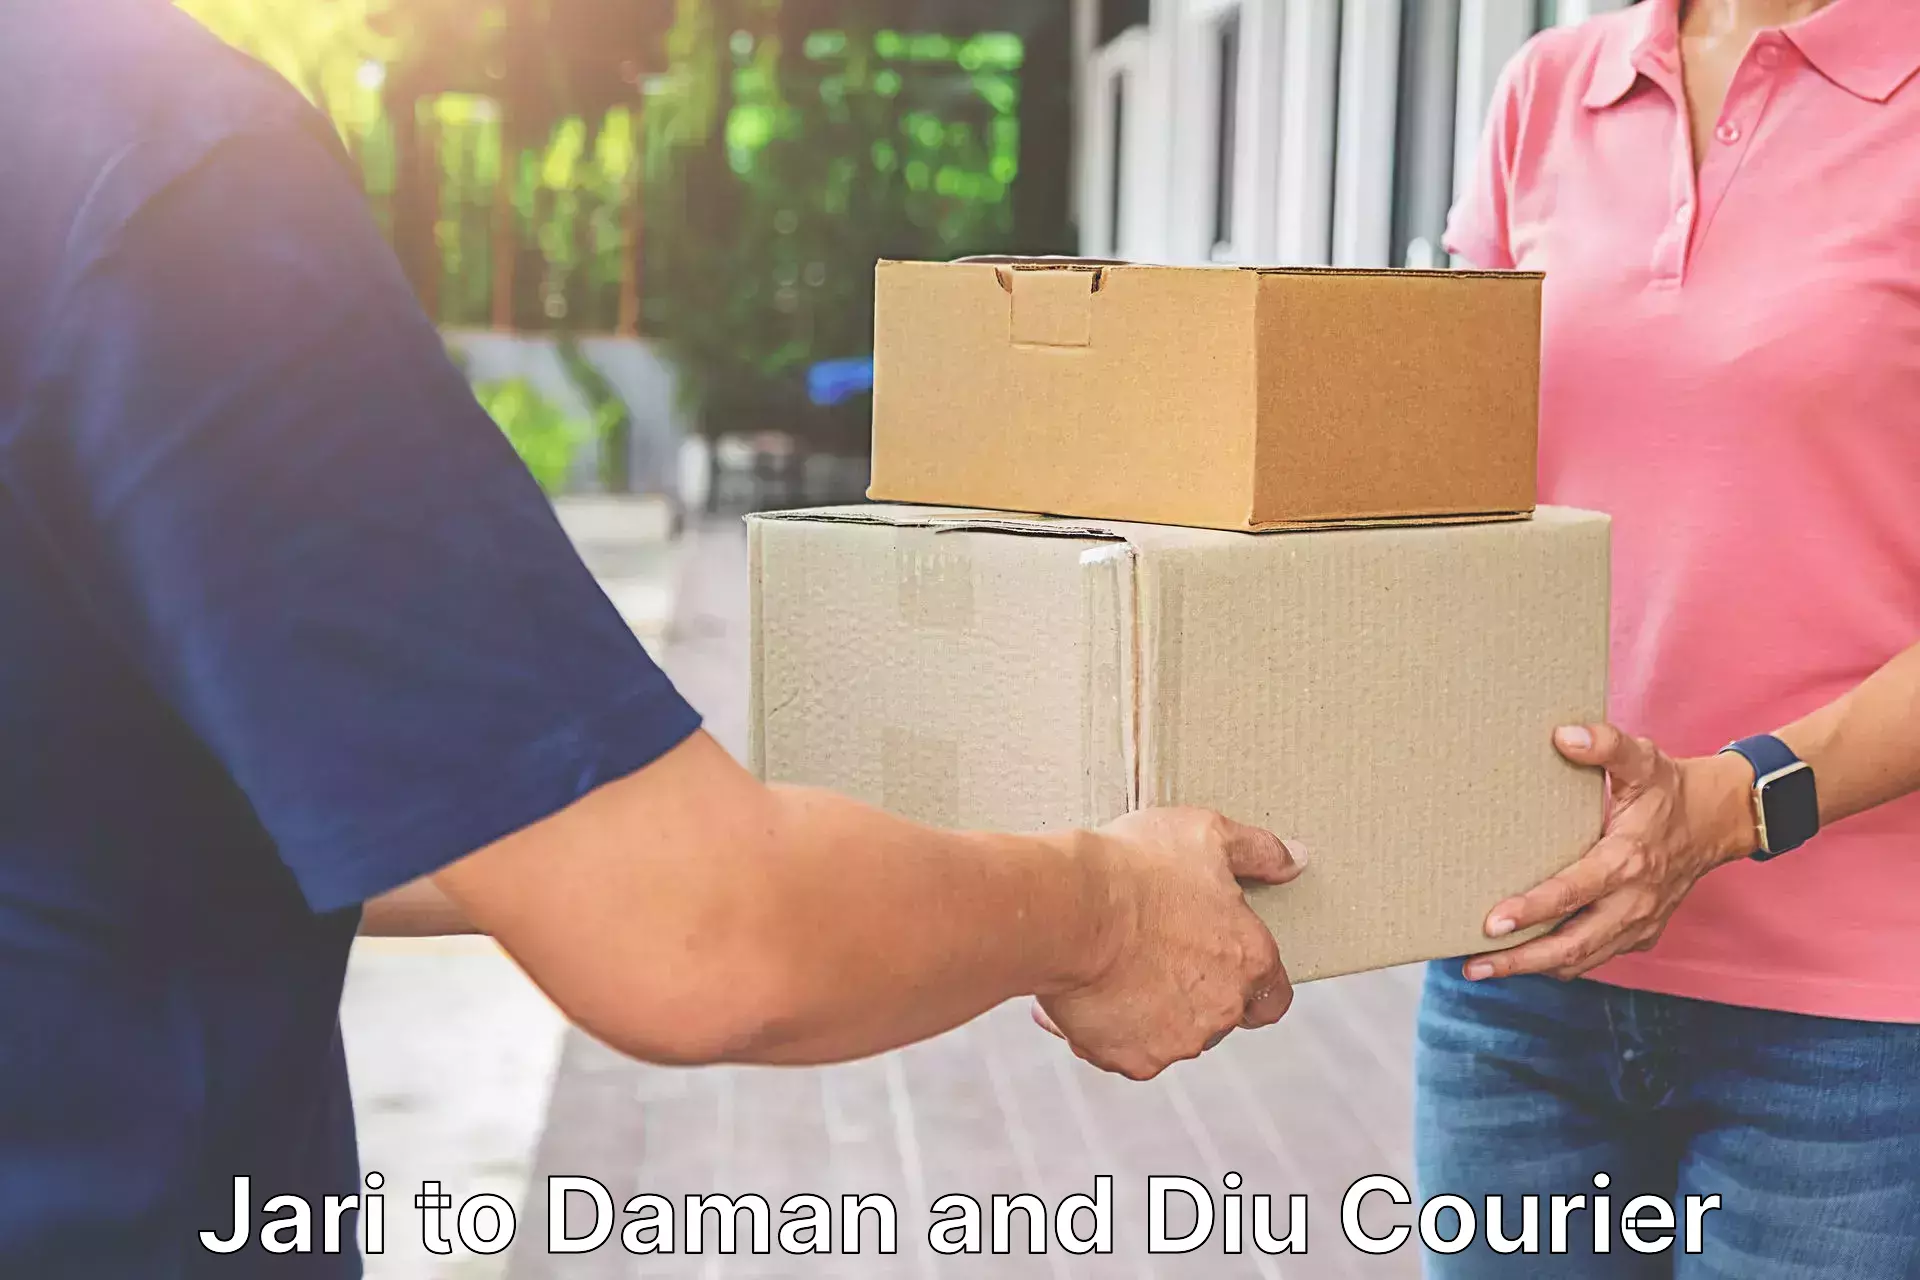 Discount courier rates Jari to Daman and Diu